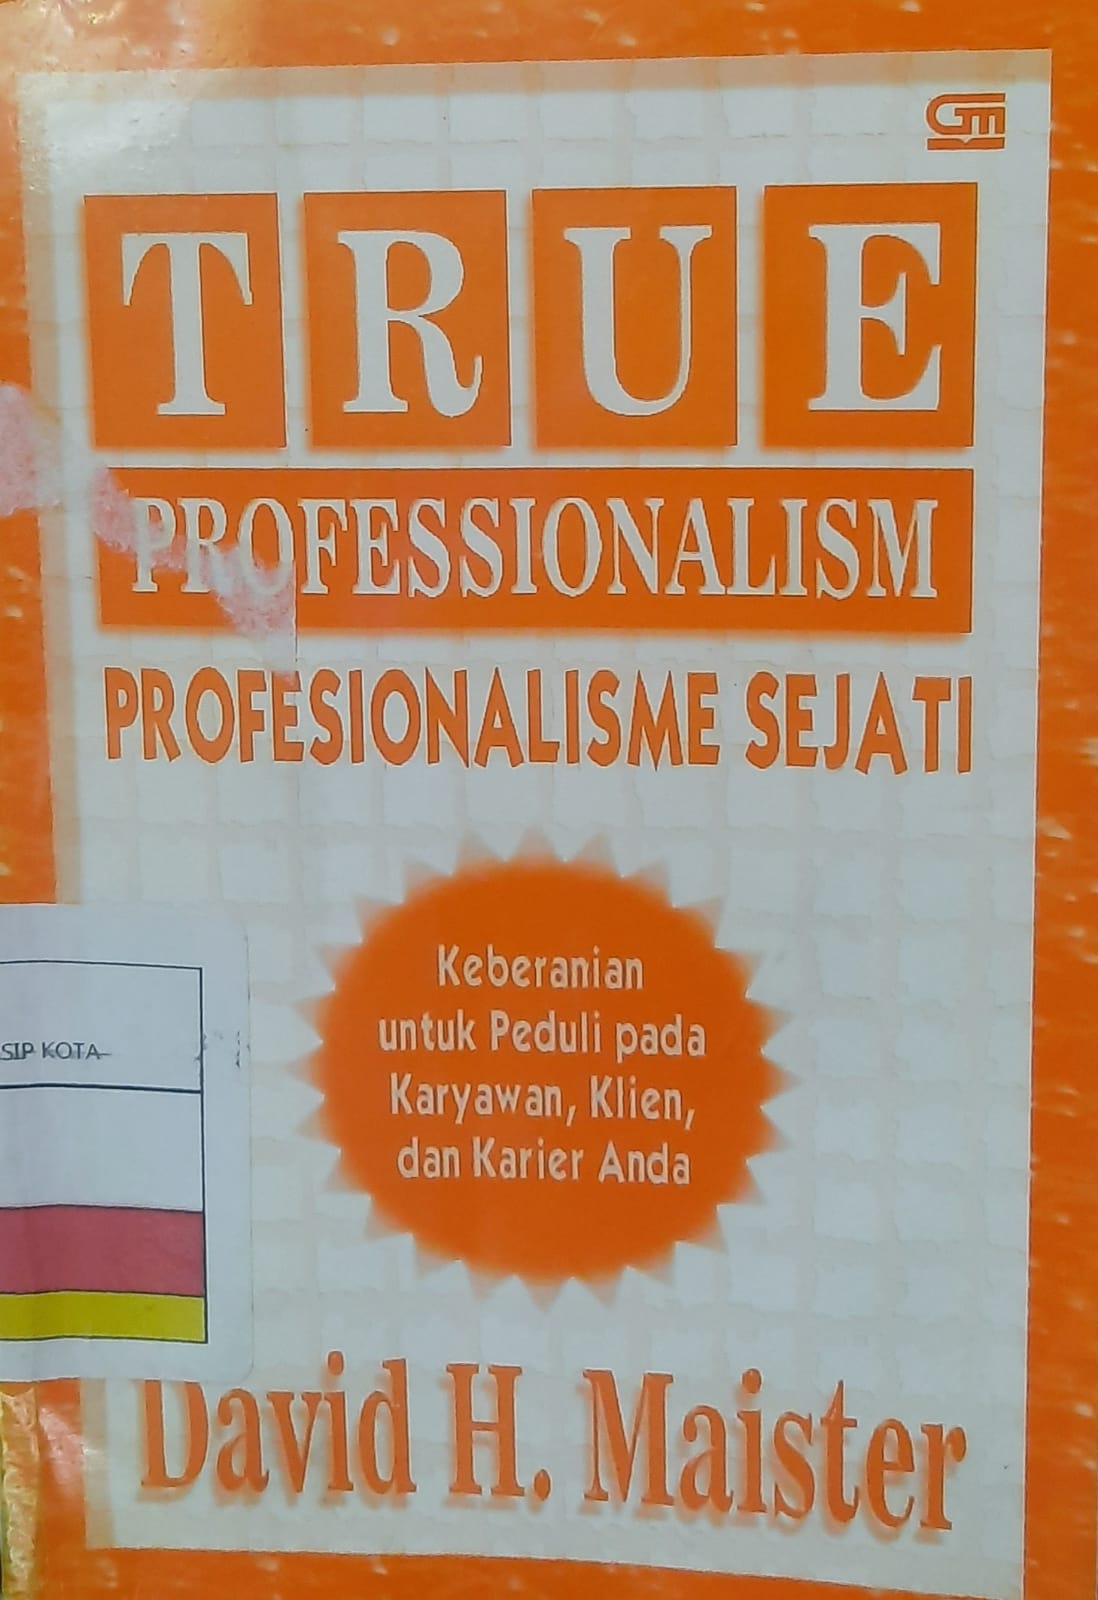 True professionalism